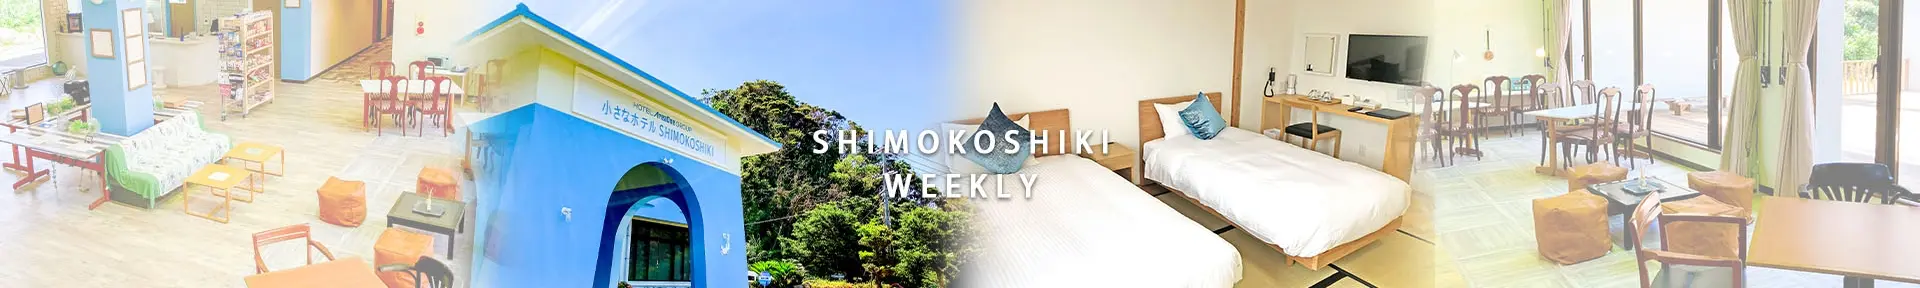 SHIMOKOSHIKI WEEKLY